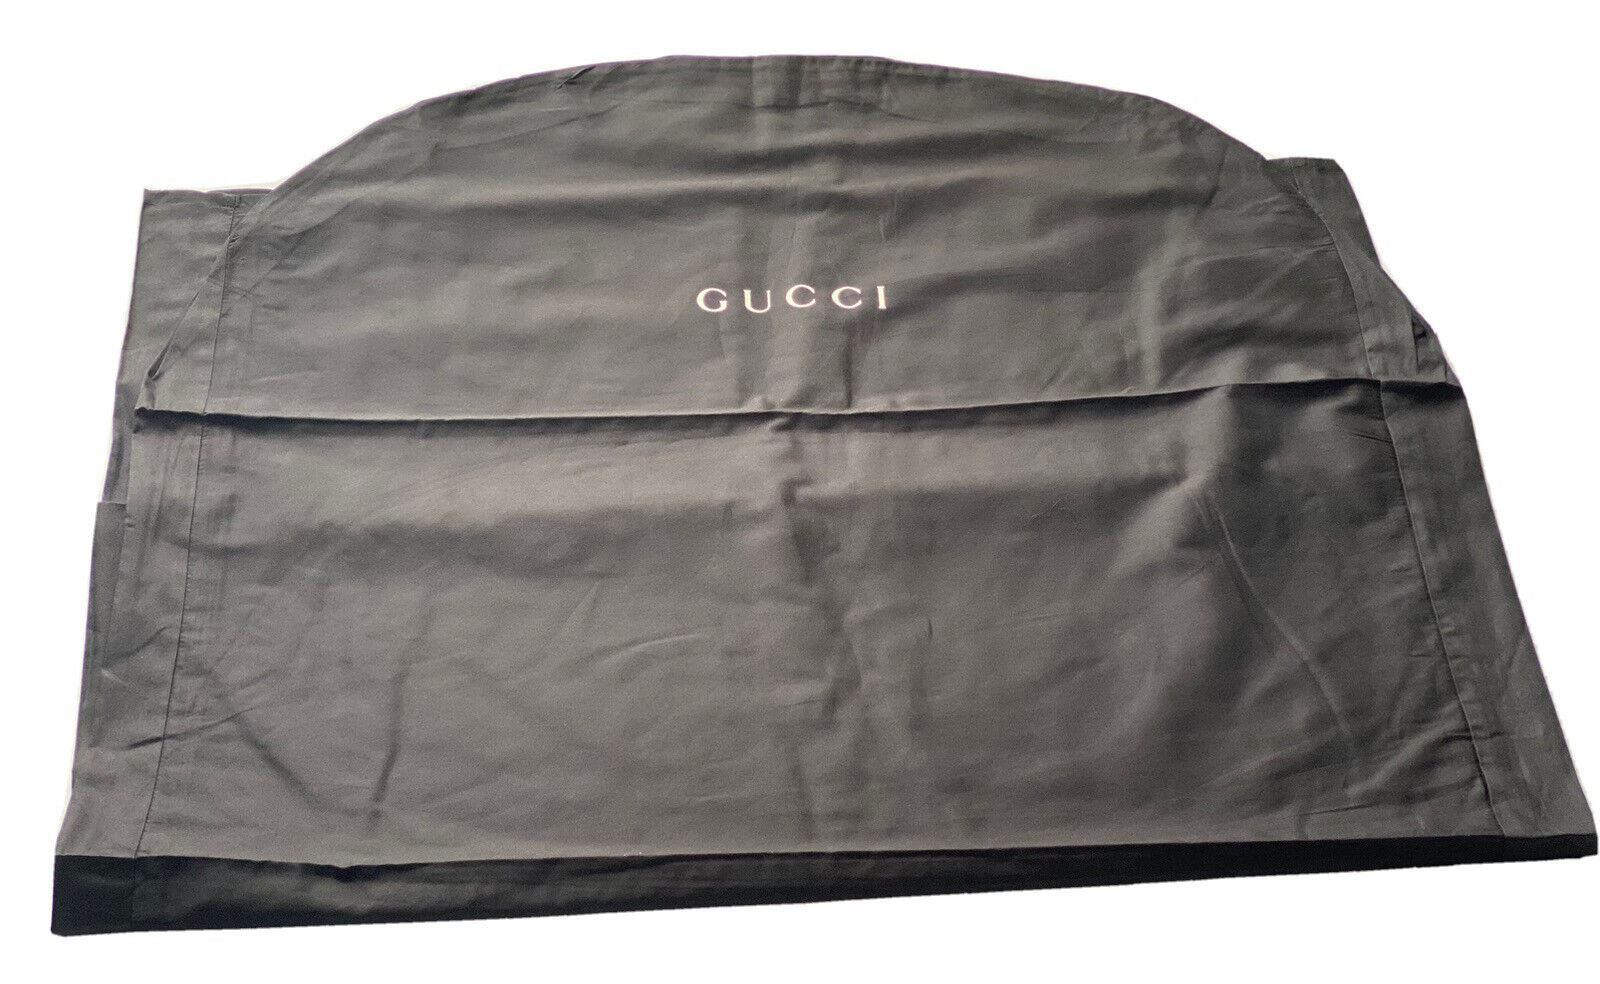 New Gucci Coat/Suite/Dress Cotton Garment Bag Black  54.5" L x 33.5" W